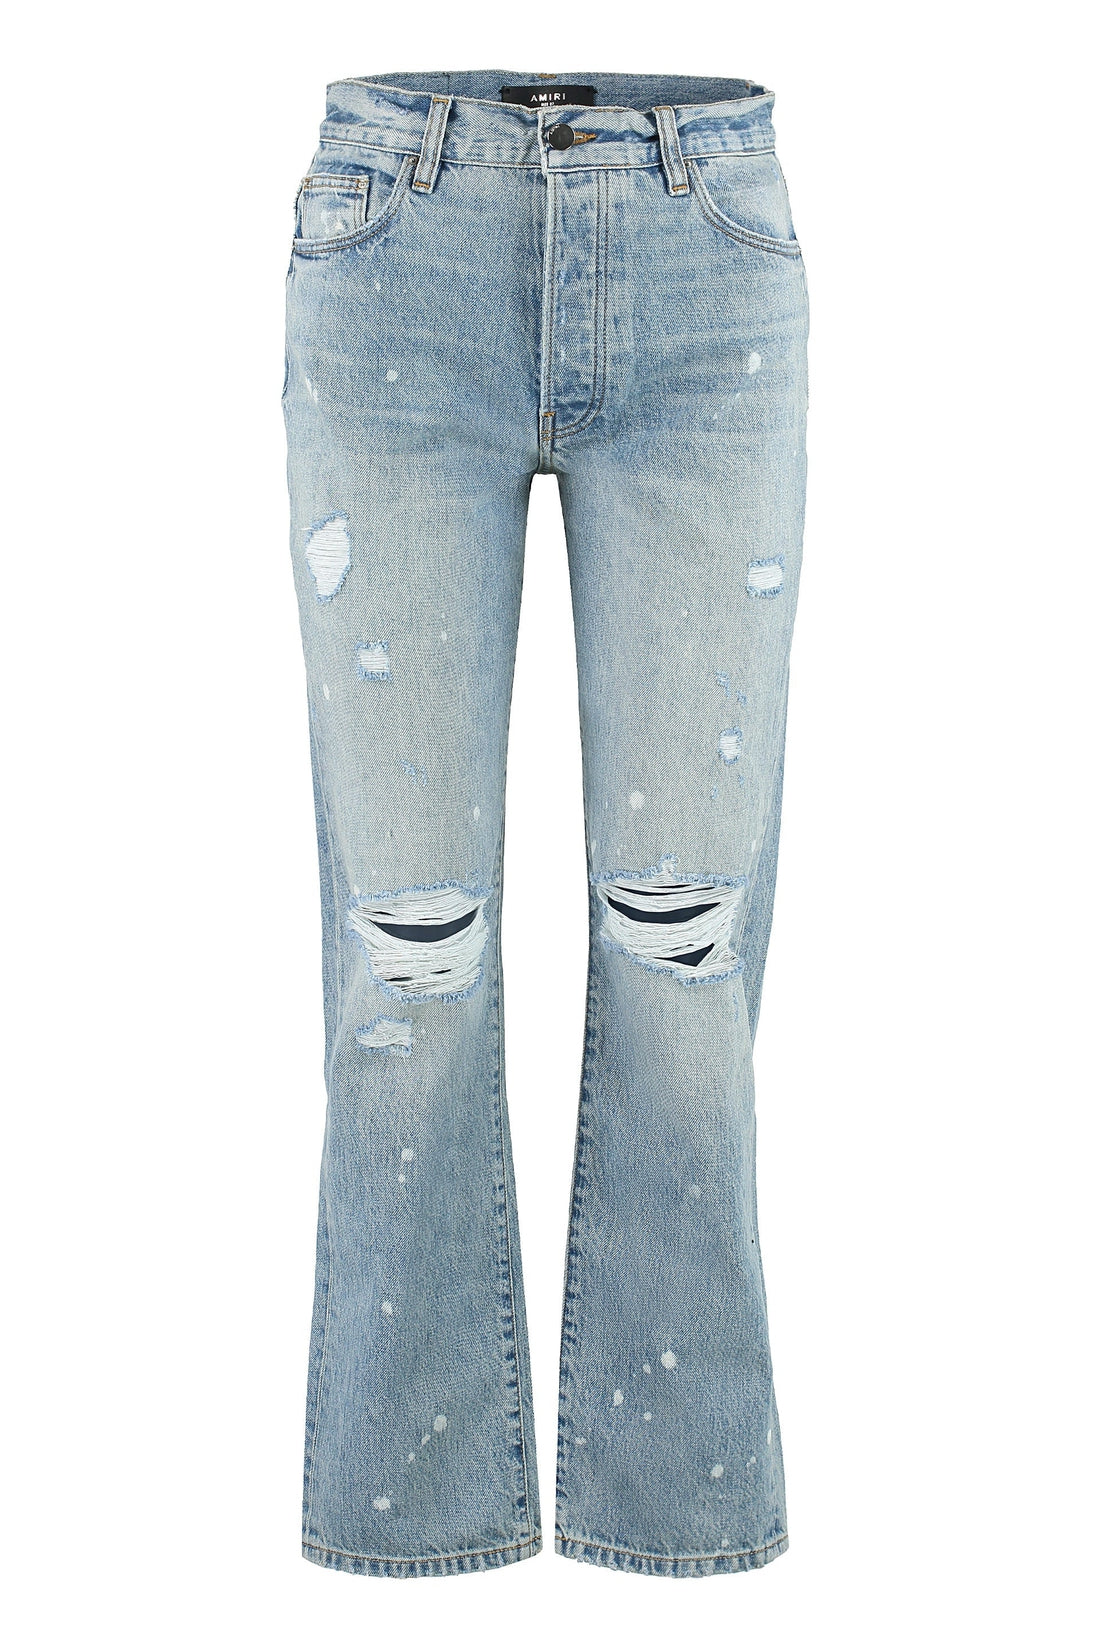 AMIRI-OUTLET-SALE-5-pocket straight-leg jeans-ARCHIVIST